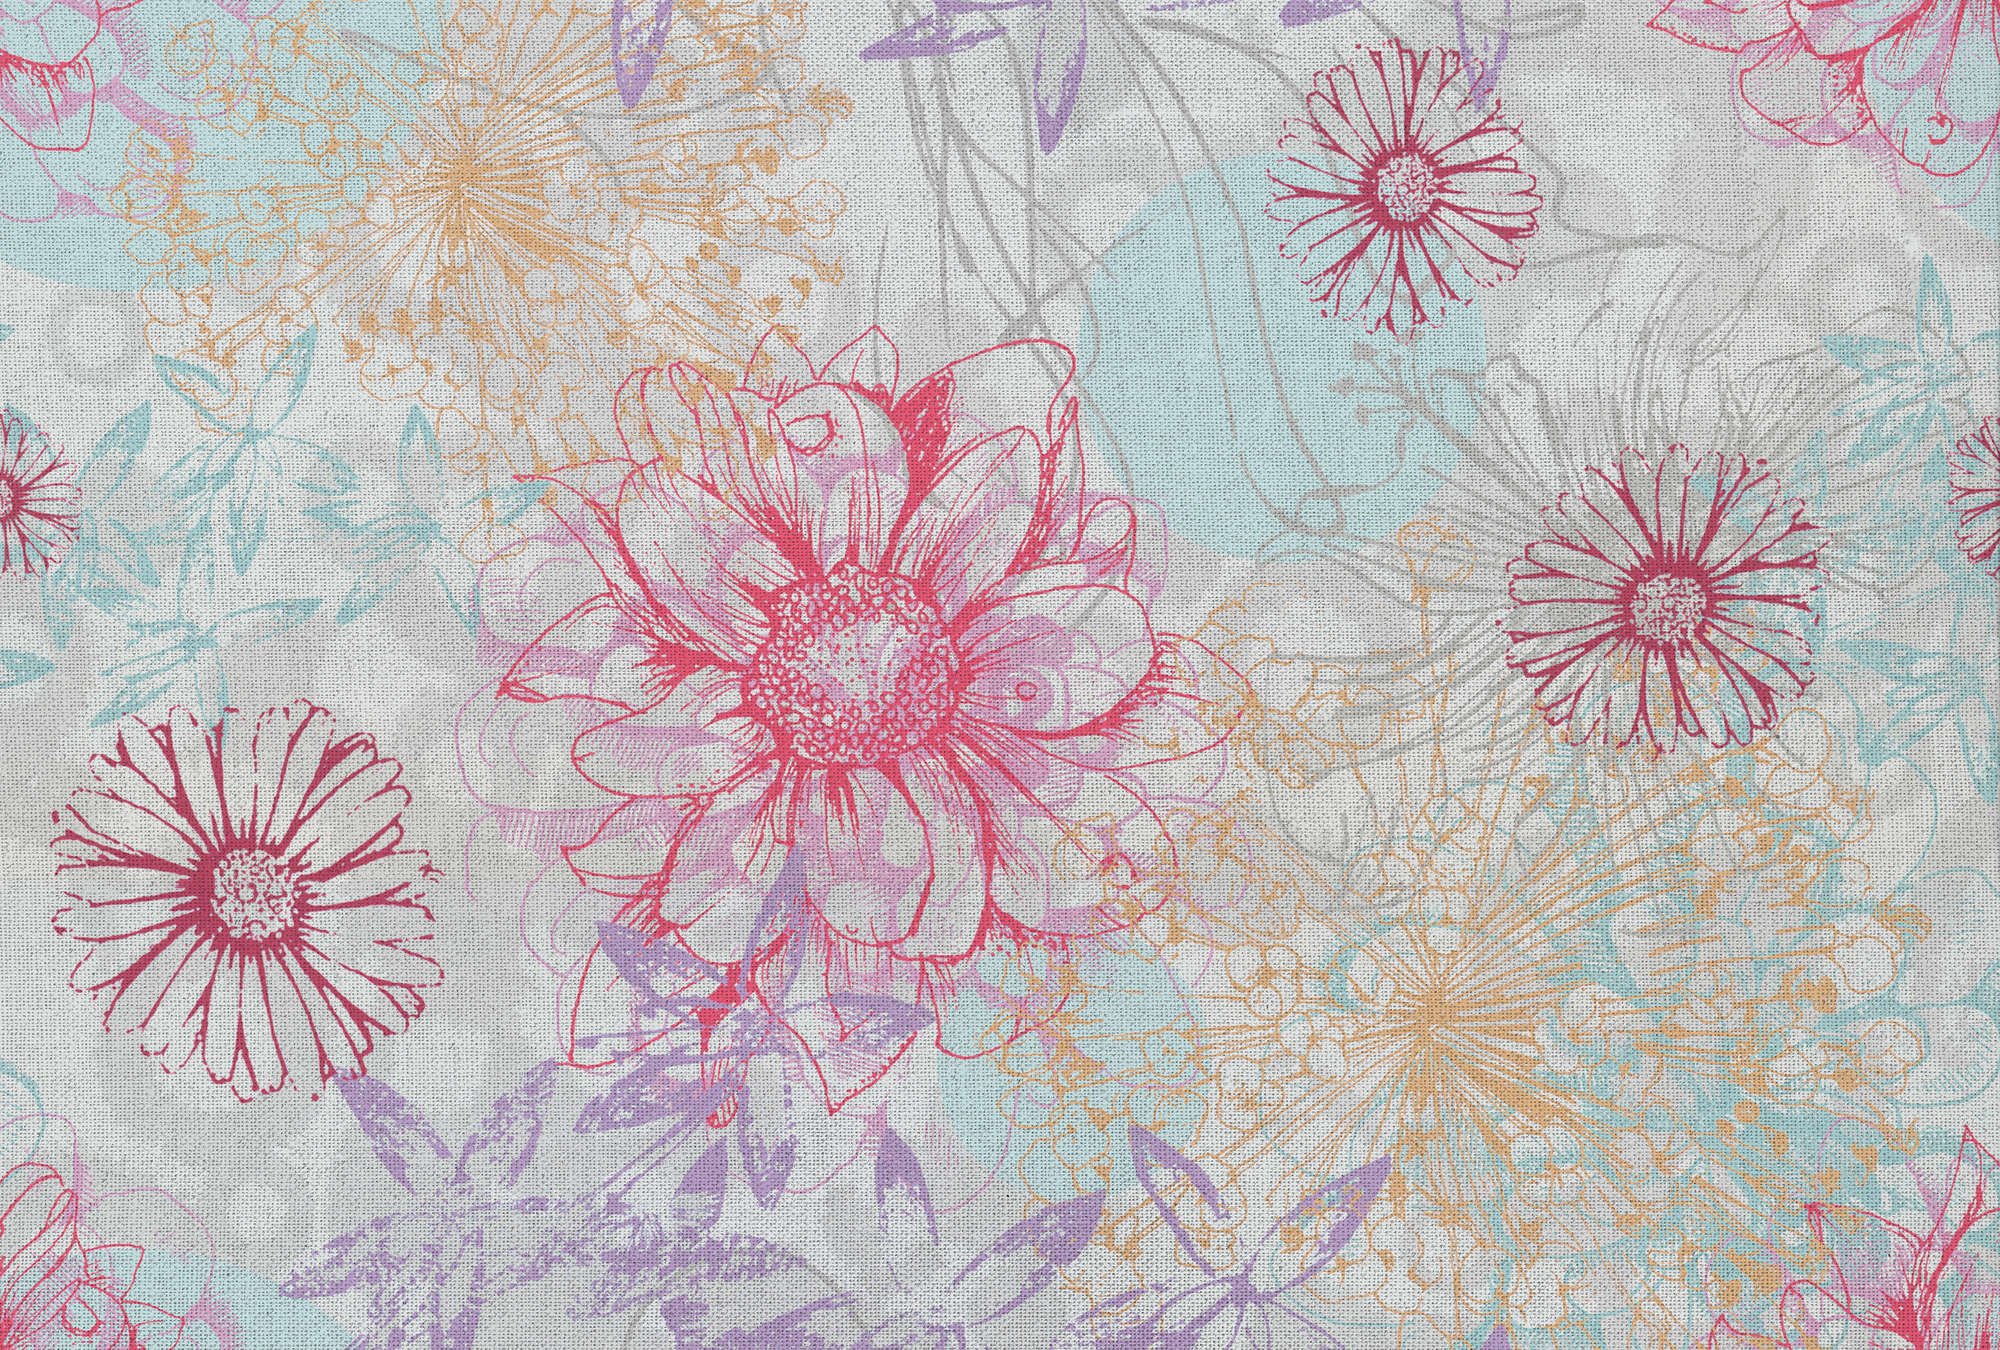             Bunte Fototapete mit Textil-Look & Blüten – Rosa, Blau, Weiß
        